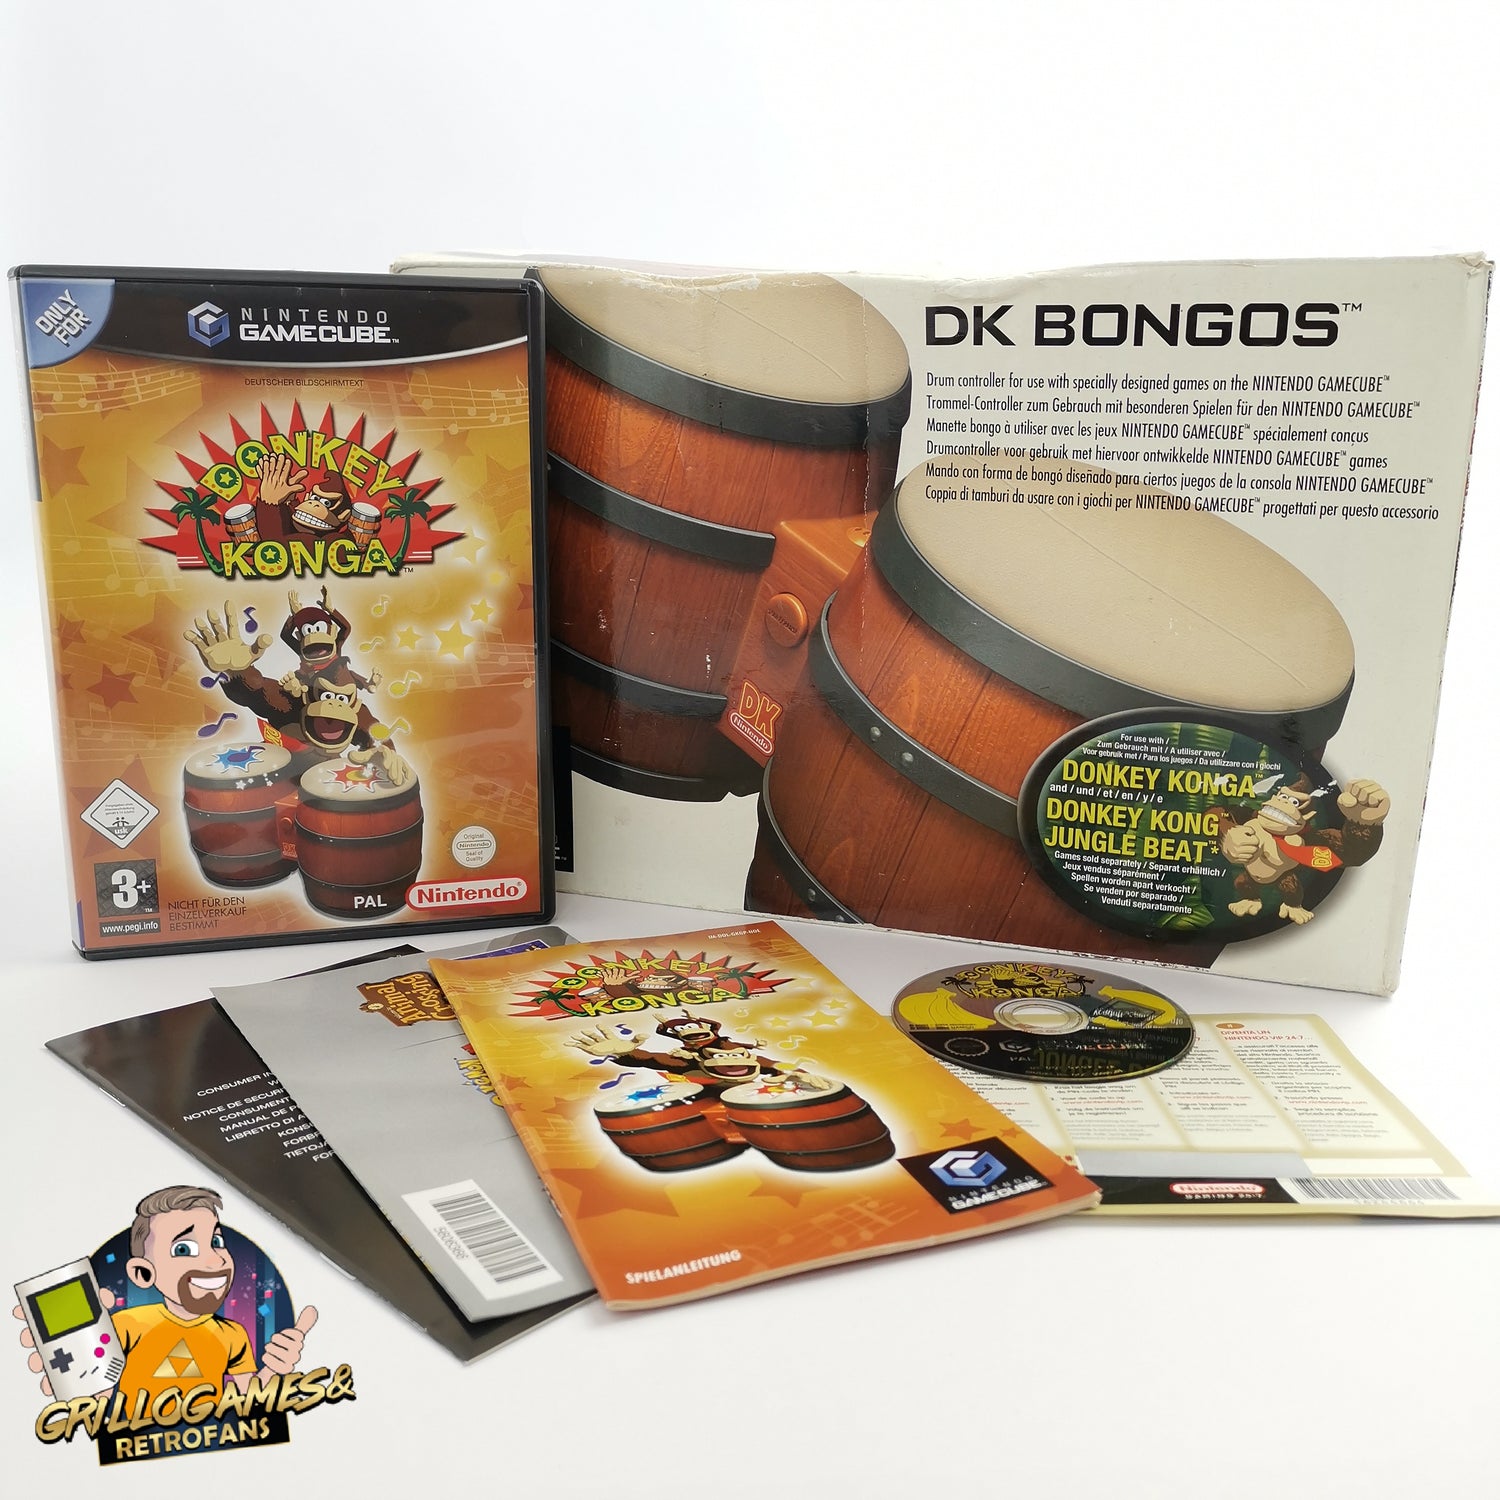 Nintendo Gamecube Game: Donkey Konga + DK Bongos Drums | Game Cube OVP PAL